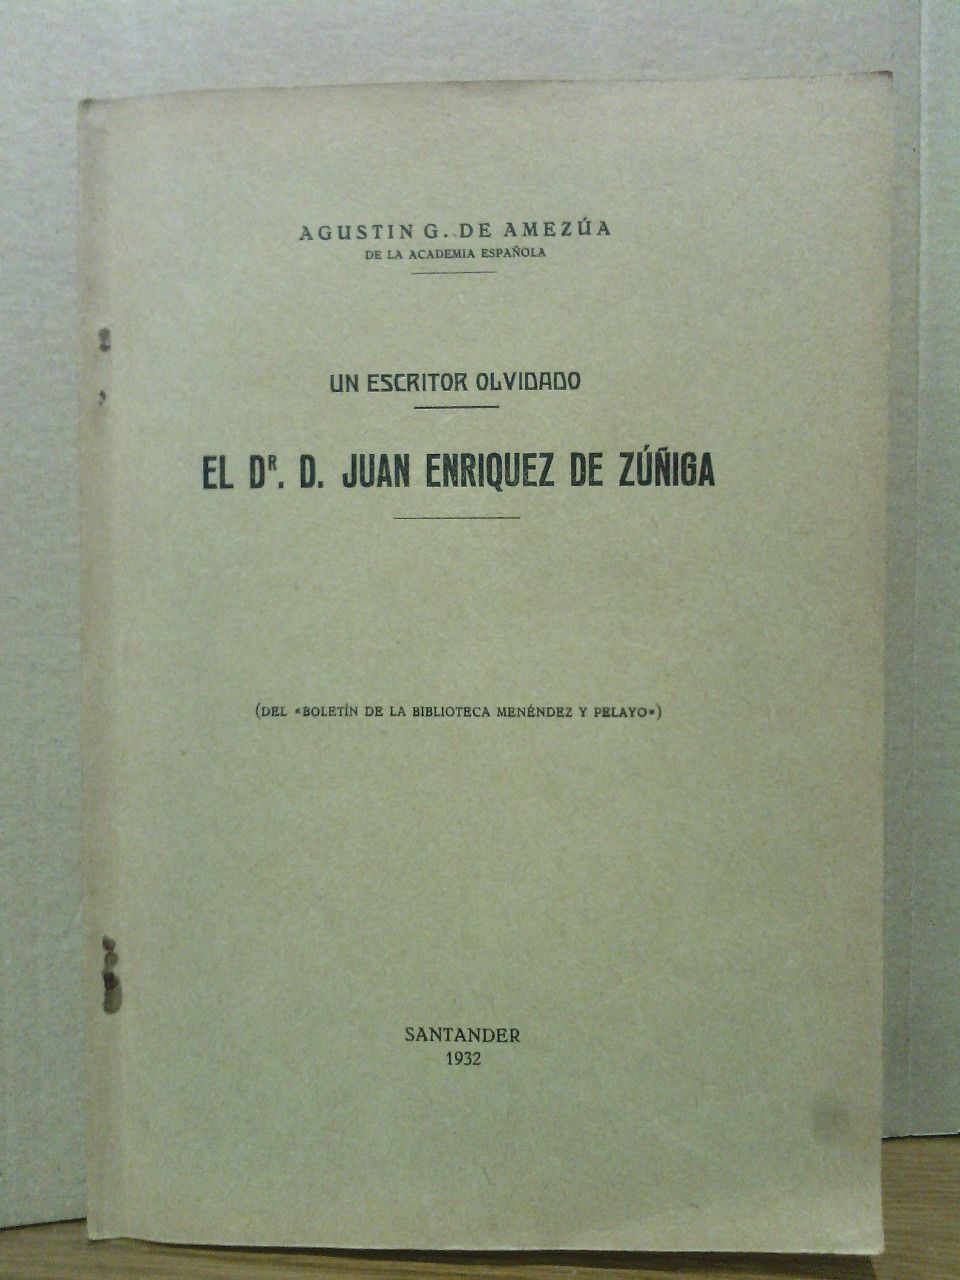 AMEZUA, Agustn G. de - Un escritor olvidado: El Dr. D. Juan Enriquez de Ziga